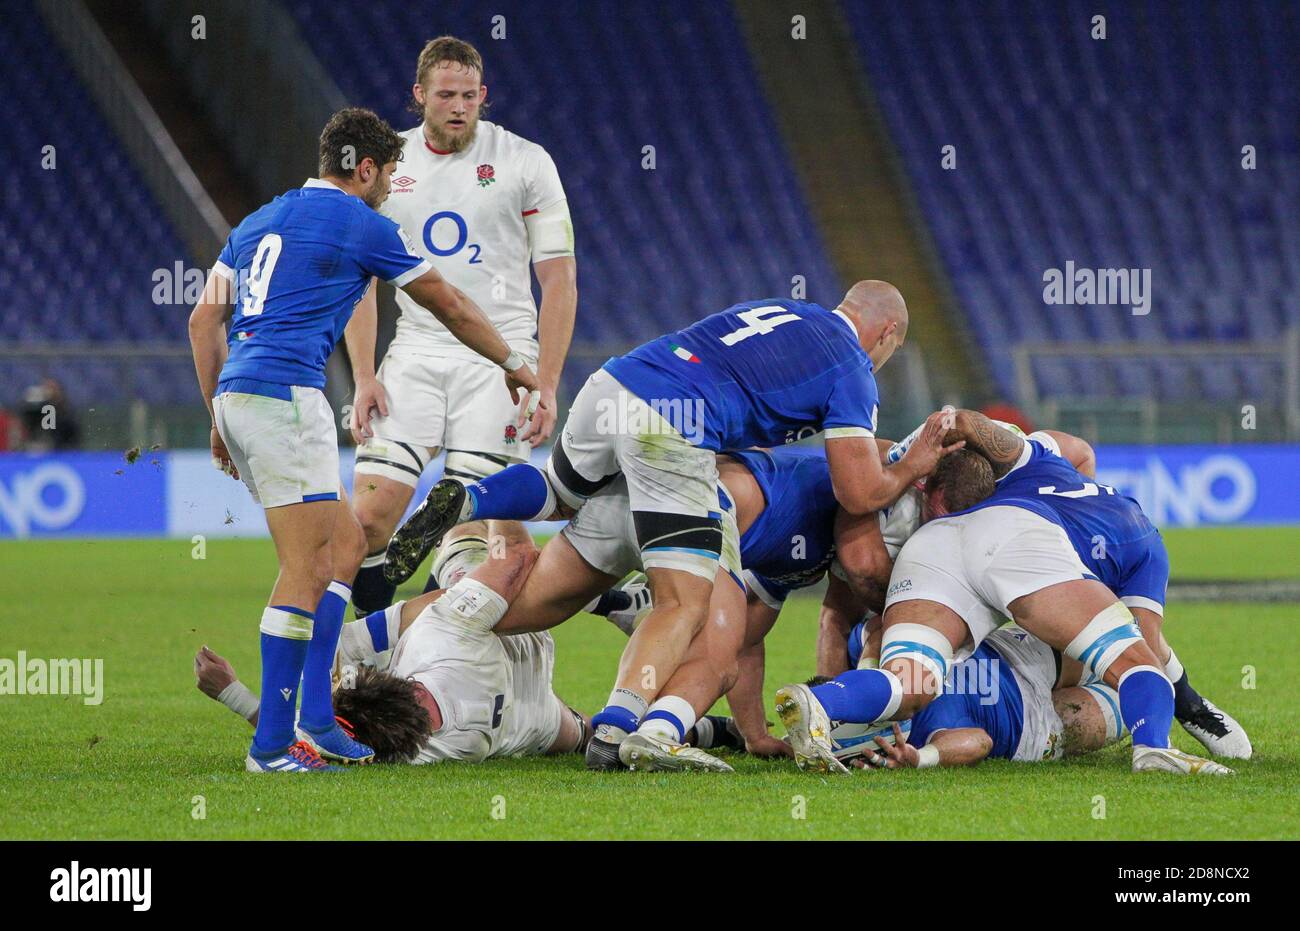 Rugby ruck immagini e fotografie stock ad alta risoluzione - Alamy